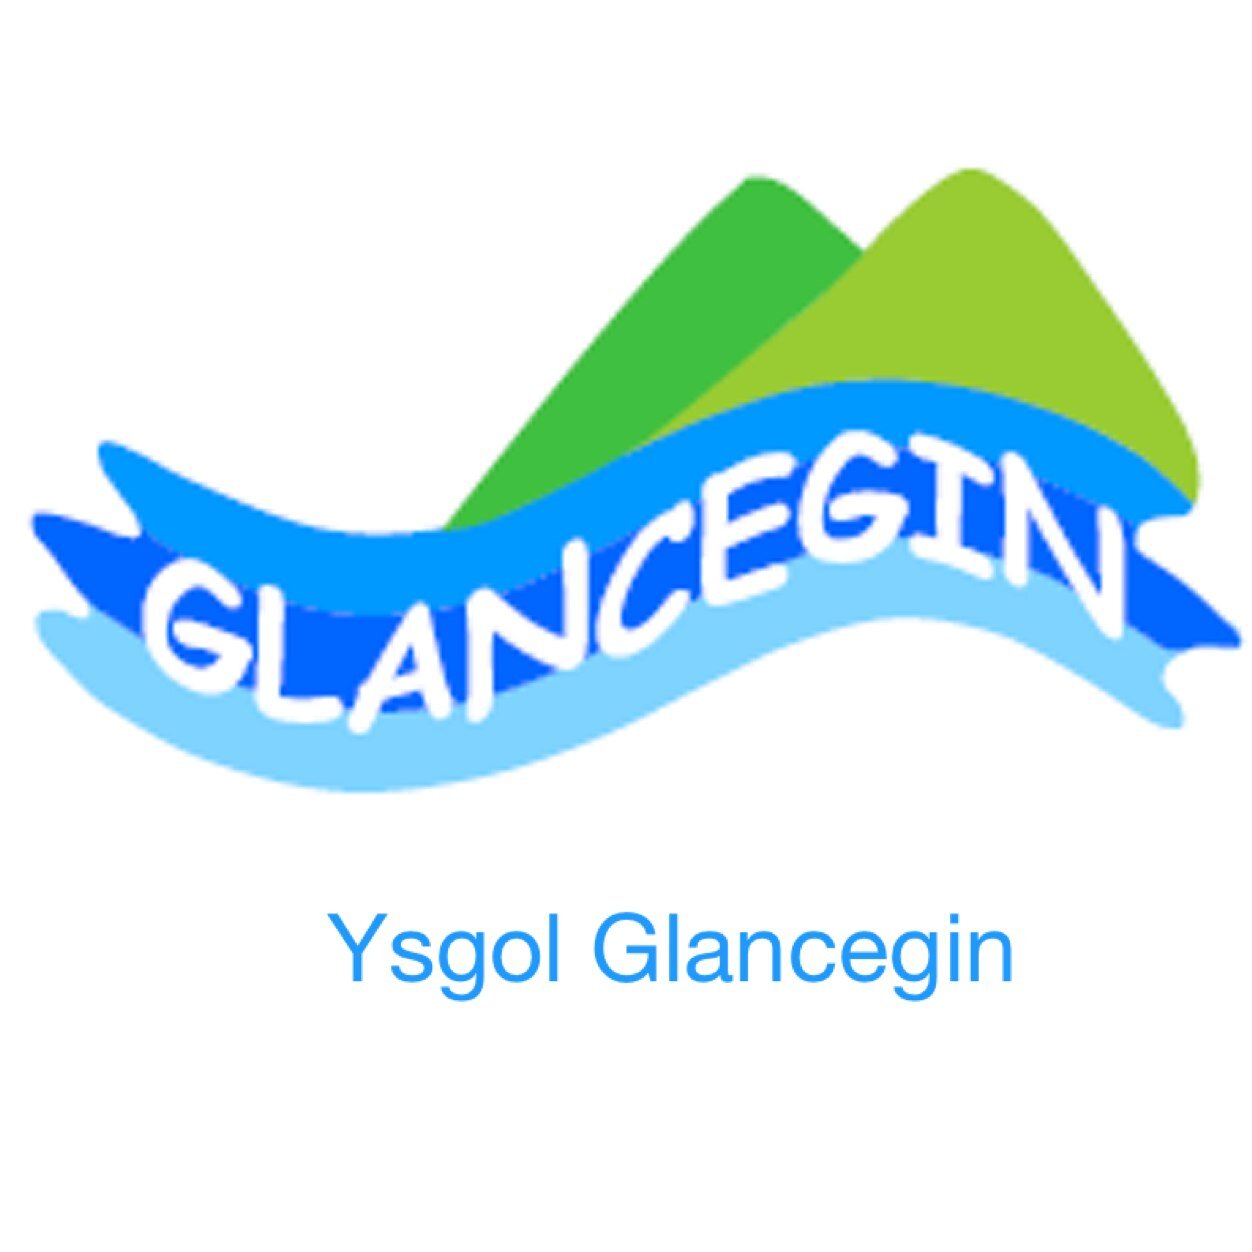 Cyfrif Trydar Swyddogol Ysgol Glancegin/ Official Twitter Account.